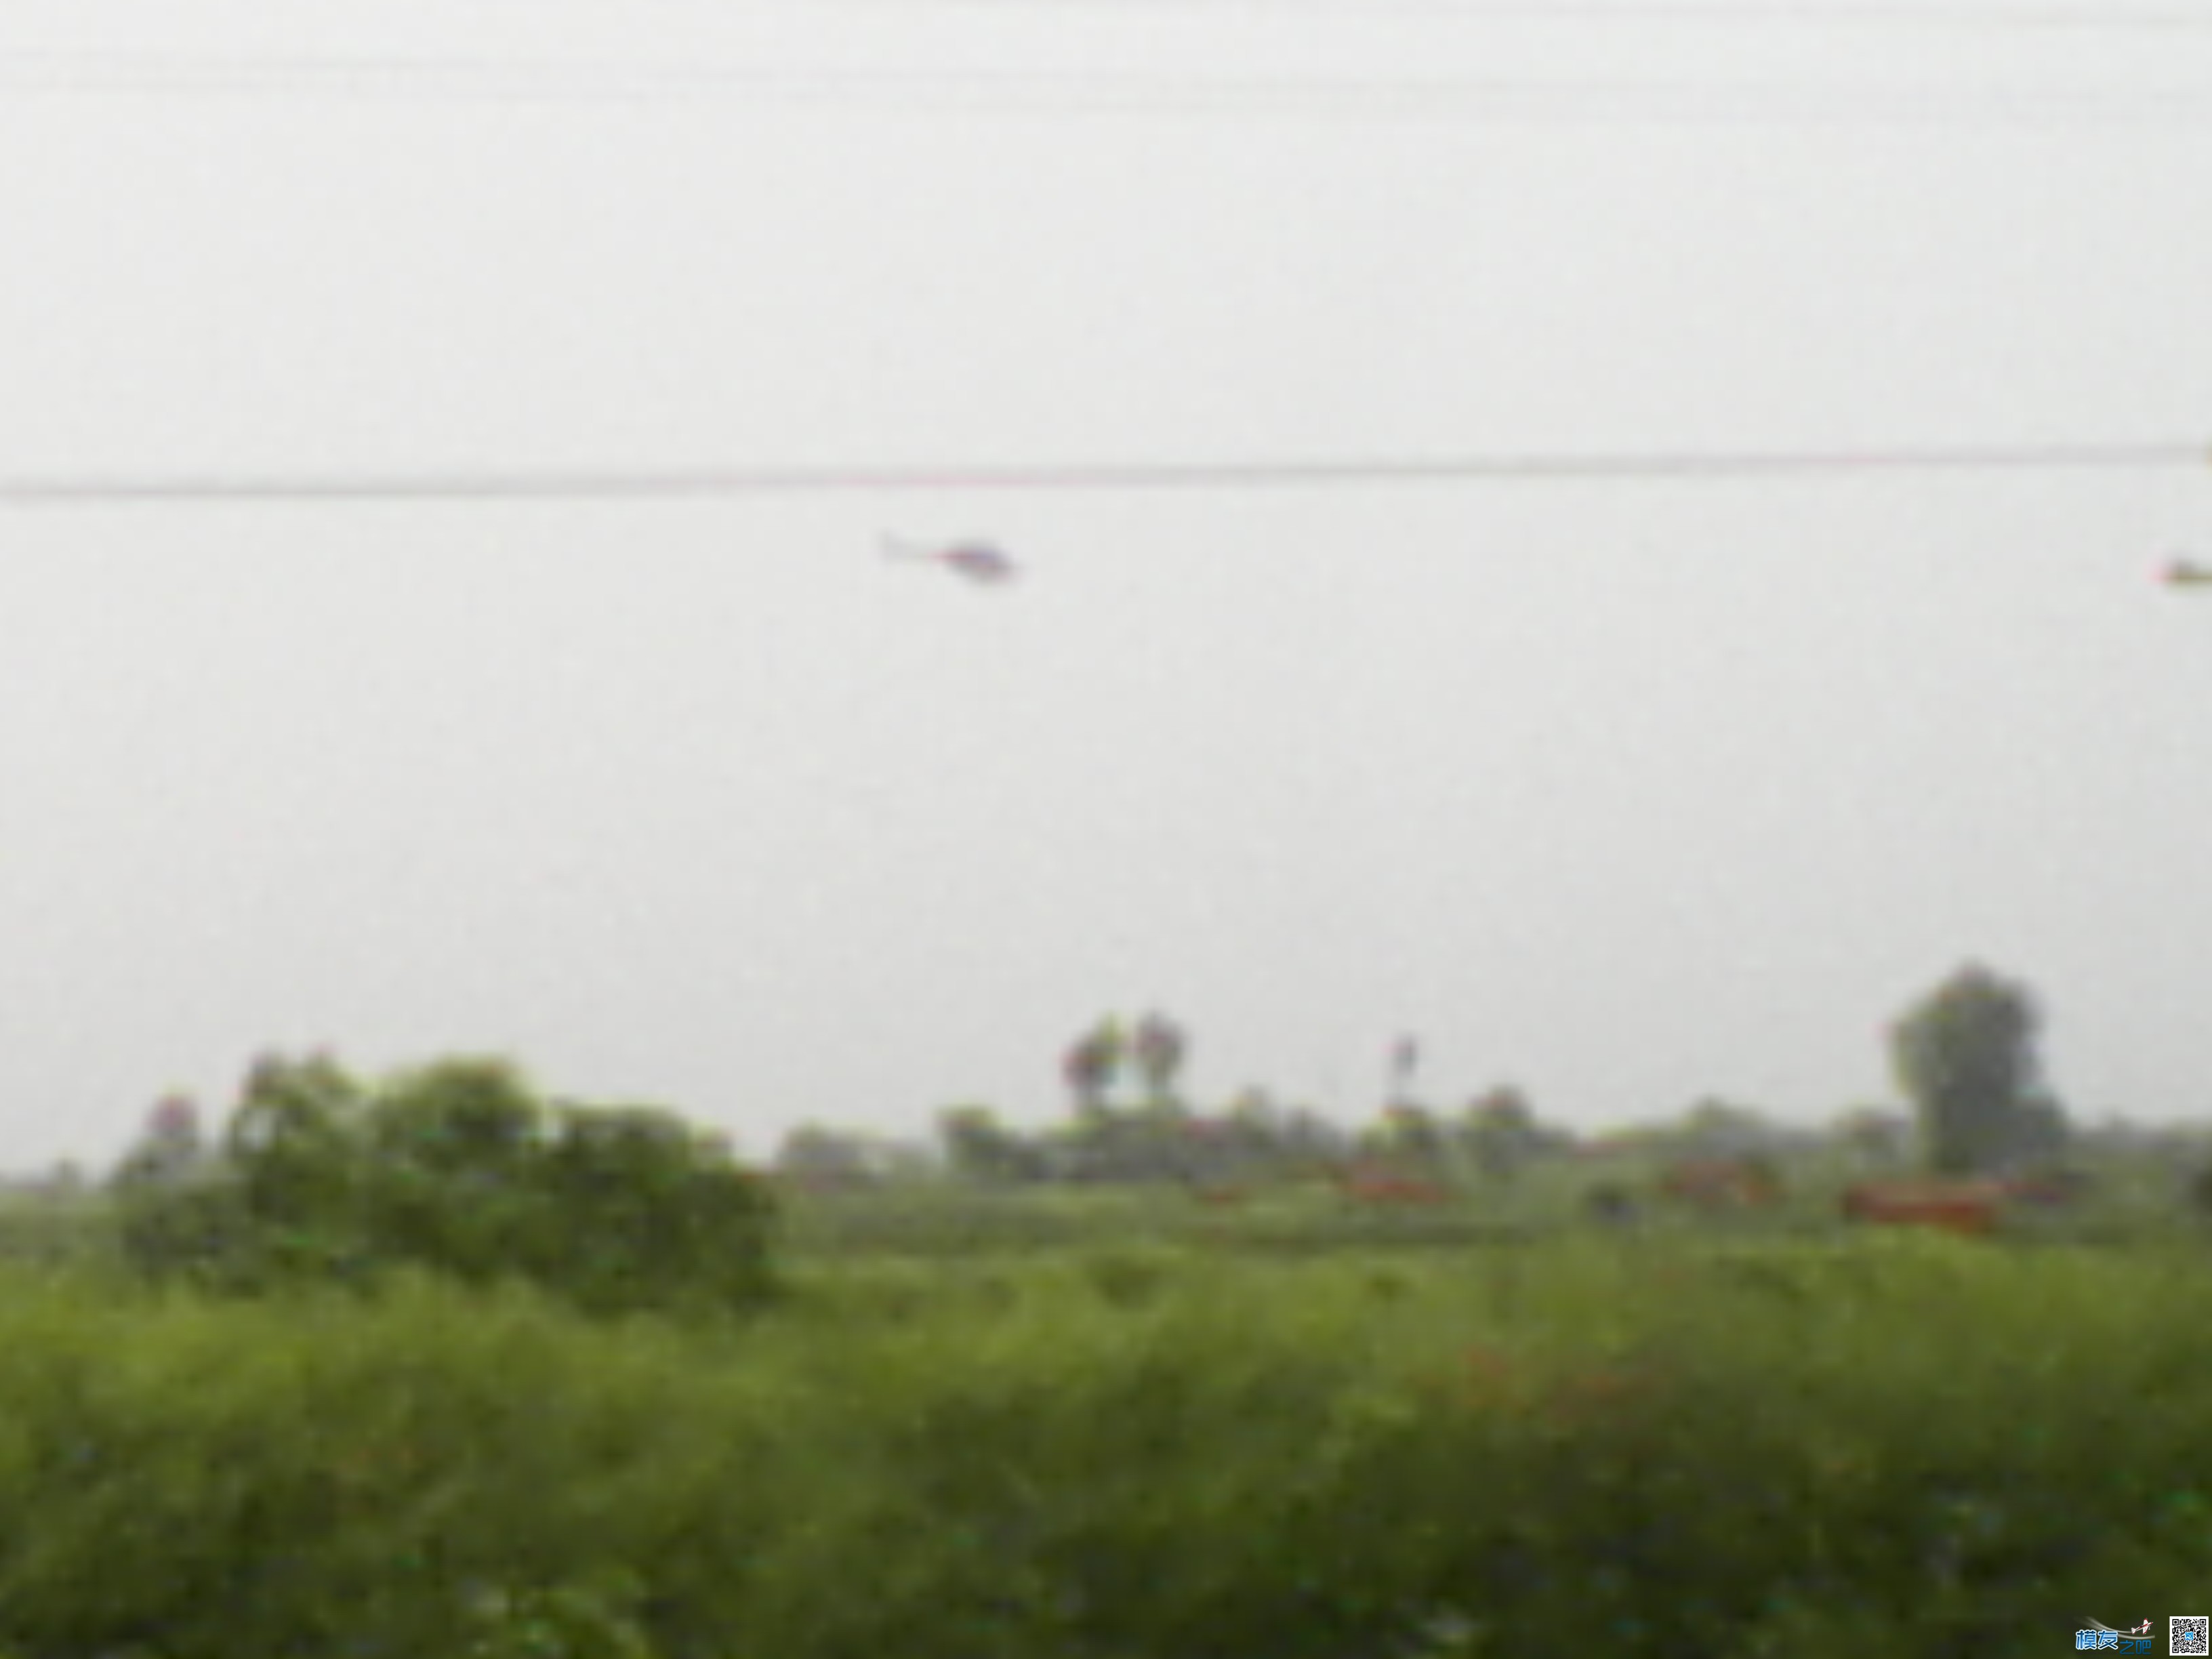 打药的小直升机 直升机,看见了,24k,不清晰,螺旋桨 作者:24k纯帅 4532 